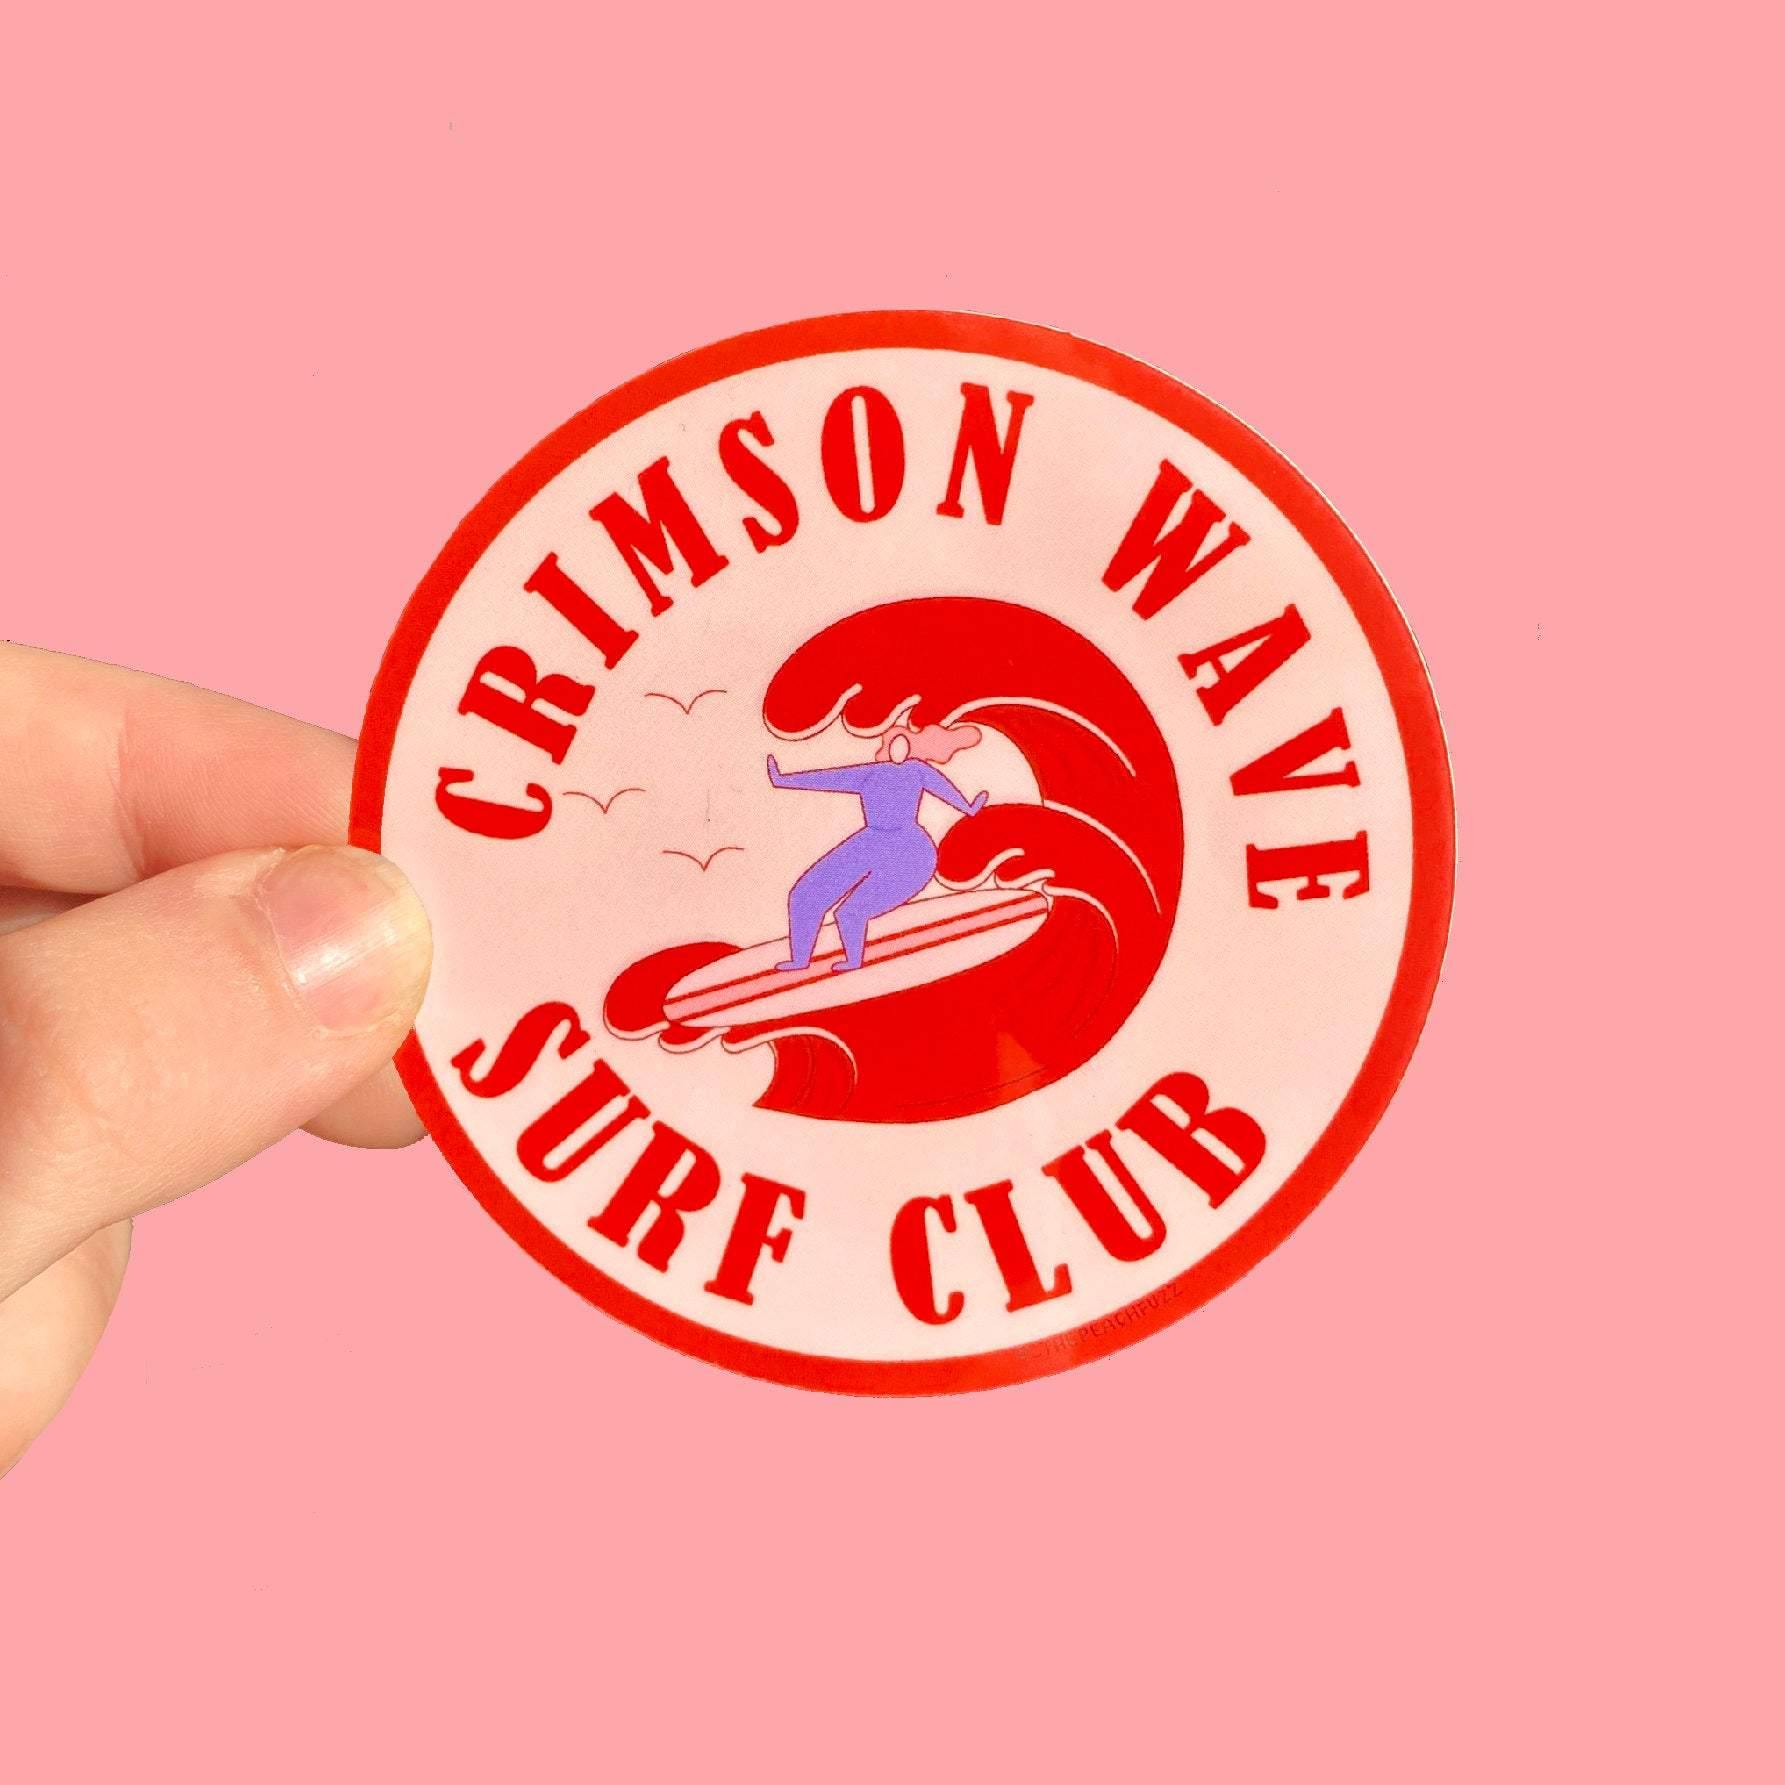 Crimson Wave Surf Club Sticker - The Peach Fuzz